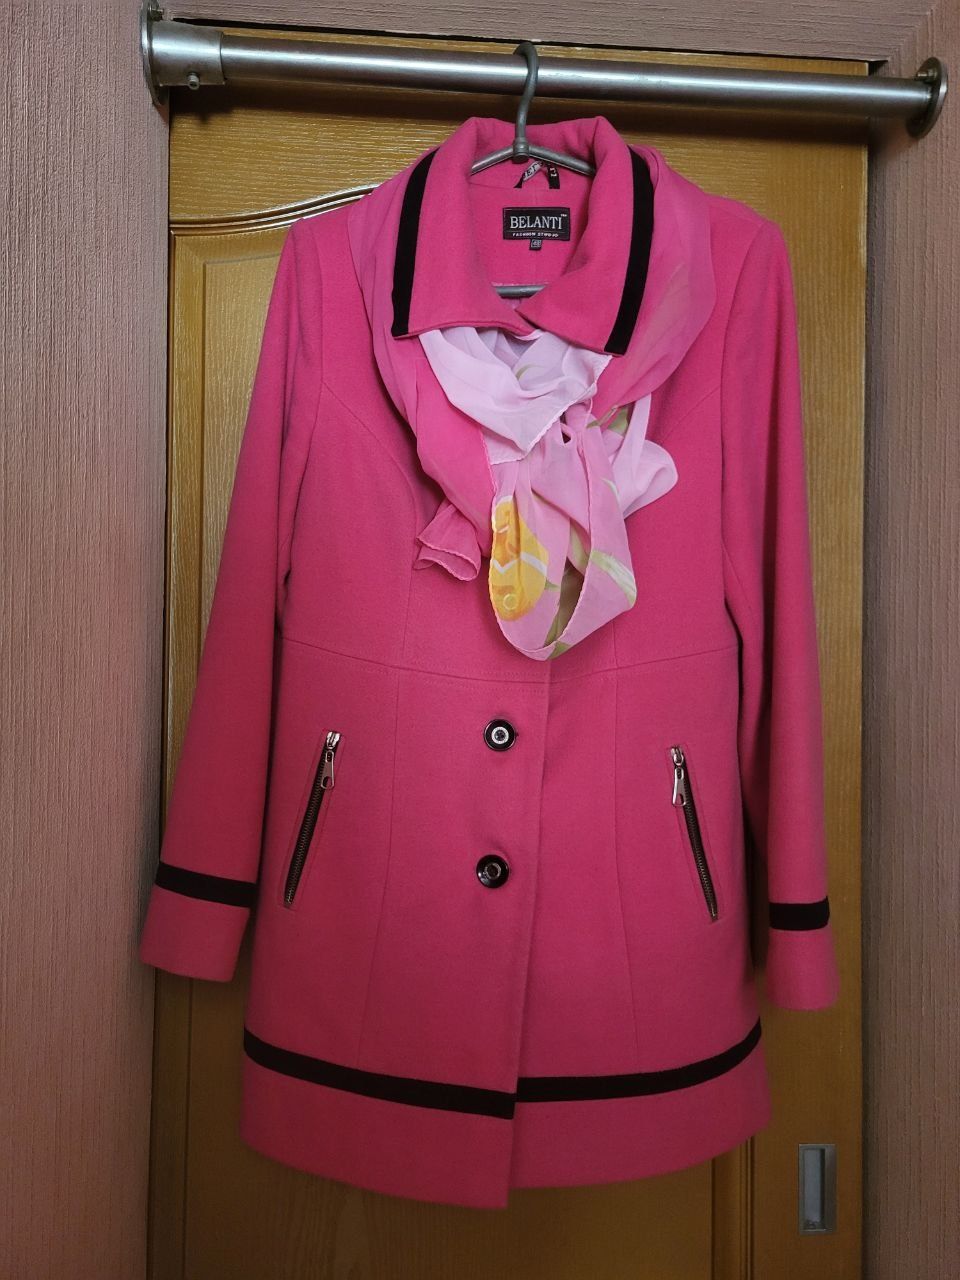 Кашемировое пальто на размер 46, 48 или 50, кардиган, куртка